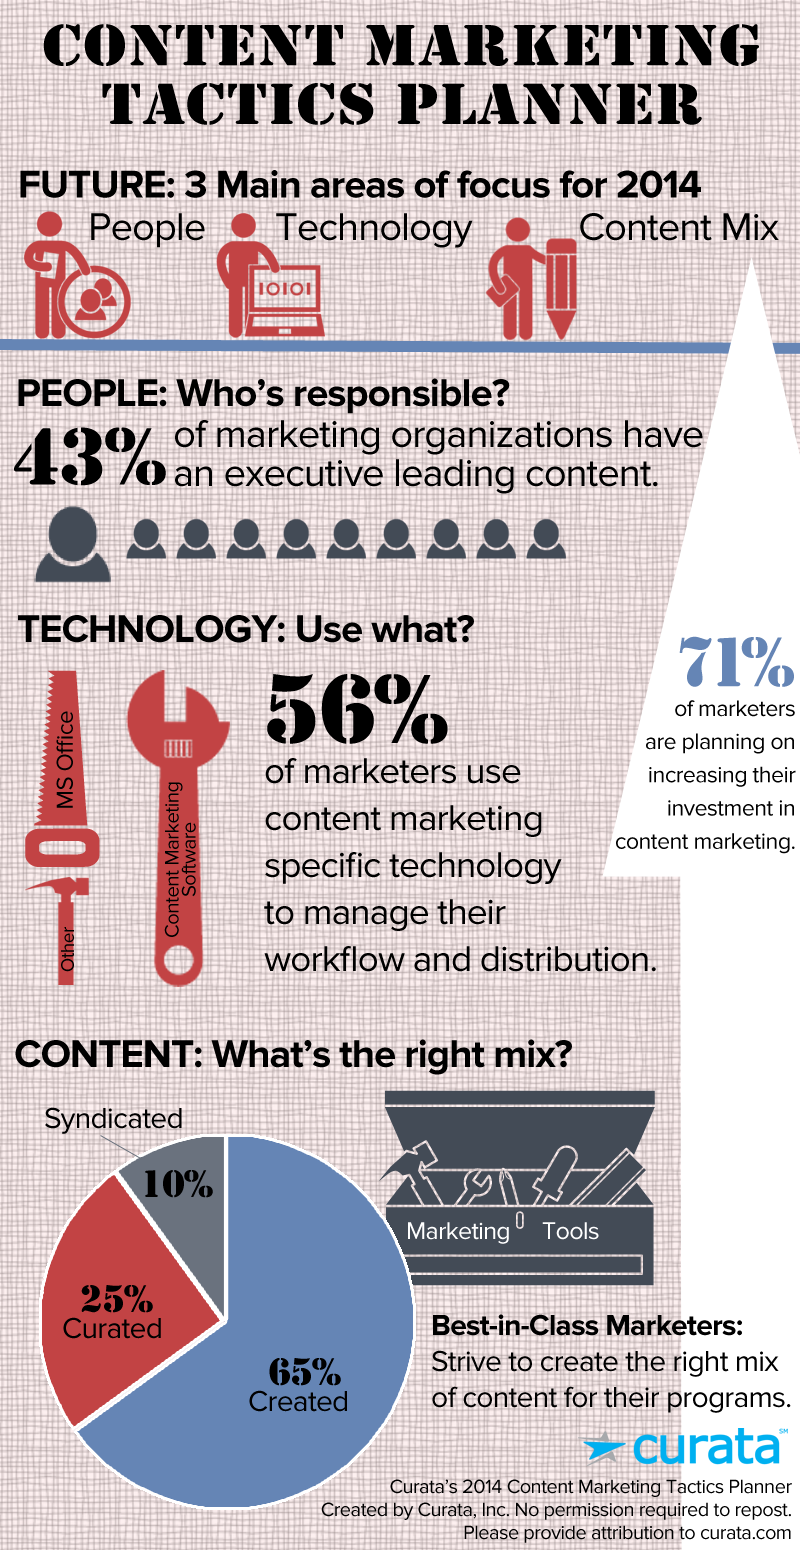 contentmarketingtactics_infographic_tools